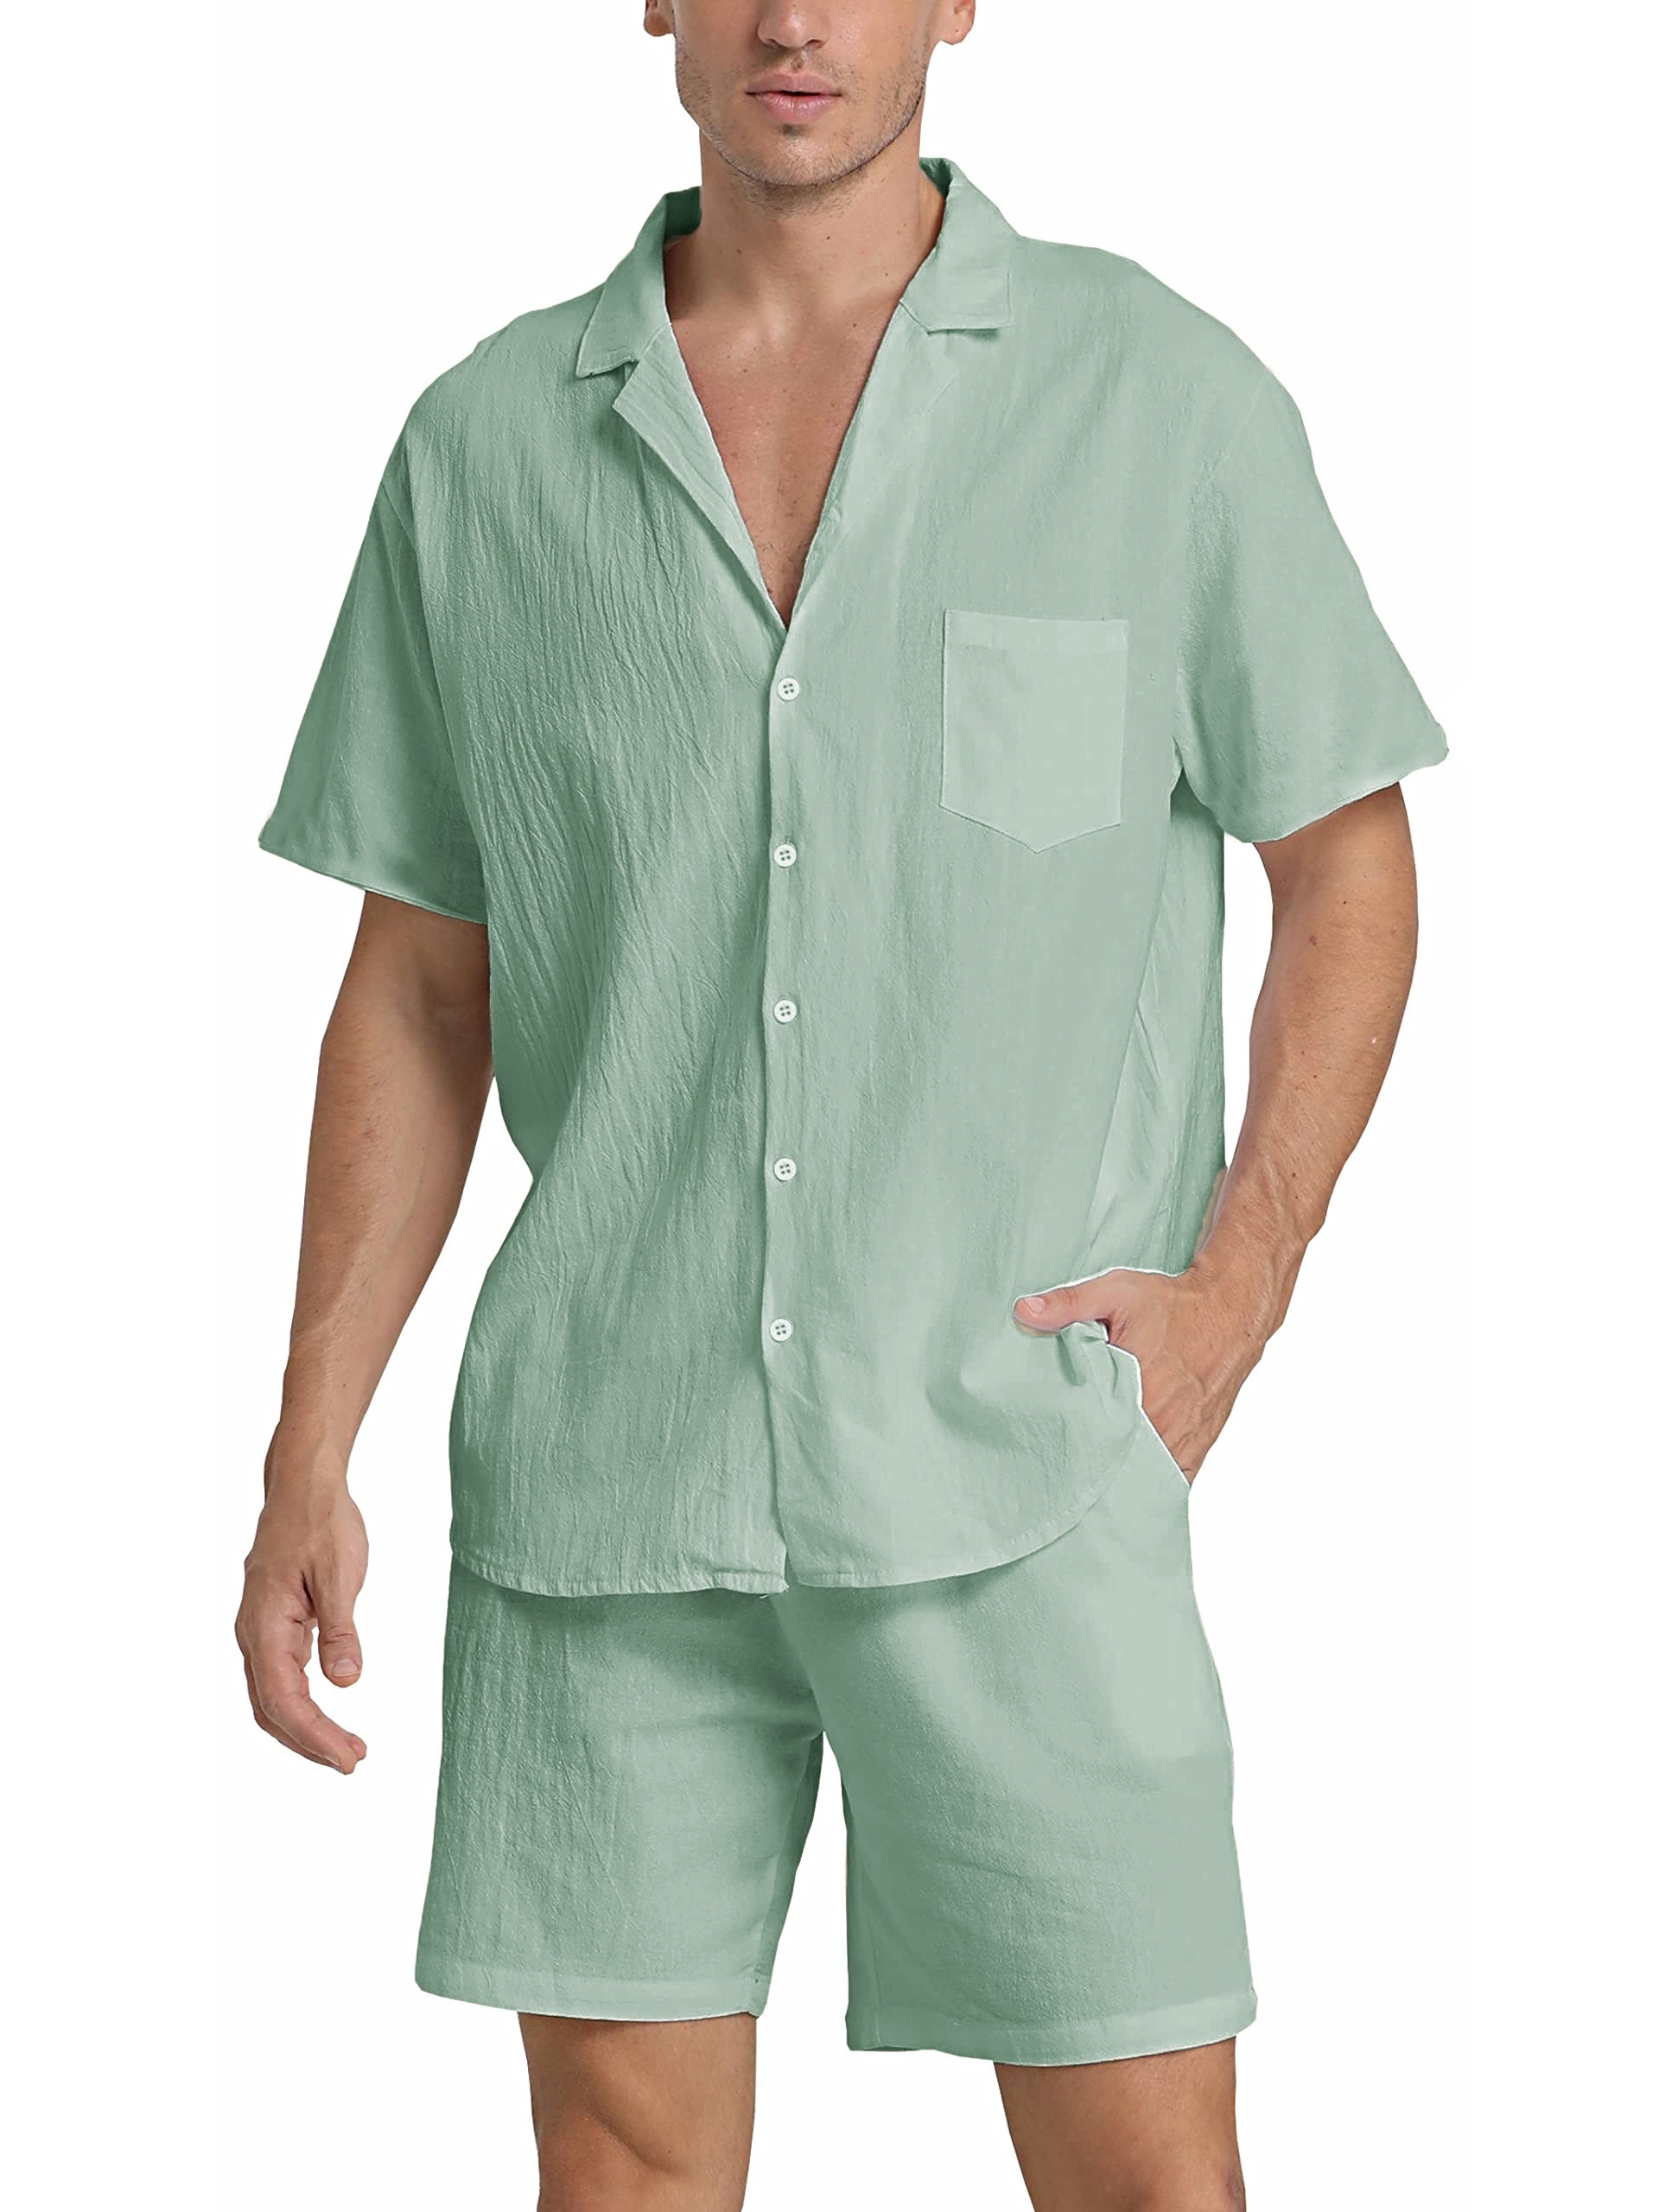 Cotton & Linen Blend 2pcs Men's Outfits Set Short Sleeve Shirt & Beach  Shorts